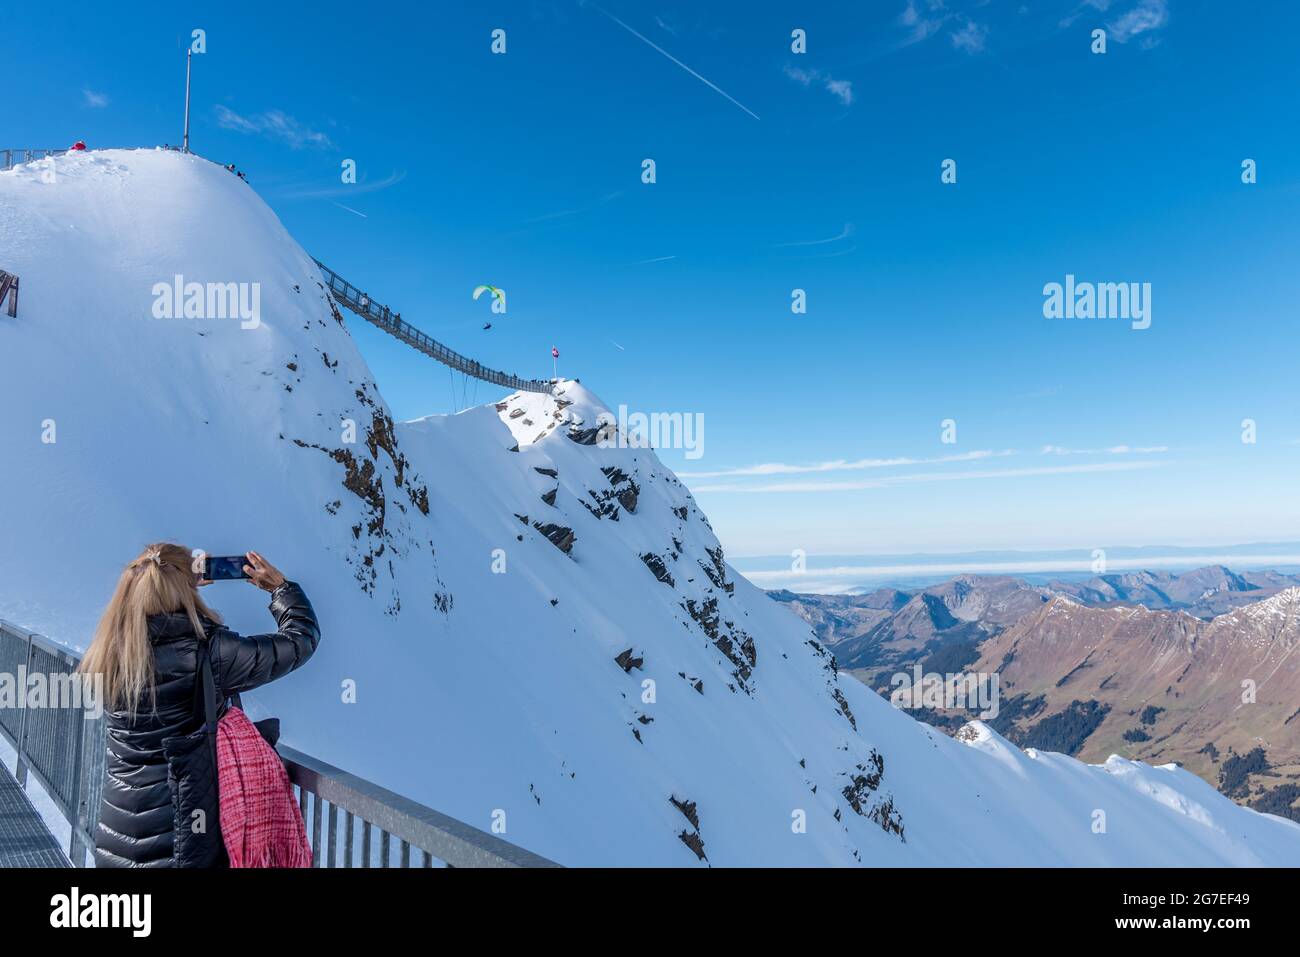 Femme non reconnue prenant photo avec son téléphone mobile d'une personne faisant du parapente dans la montagne. Banque D'Images